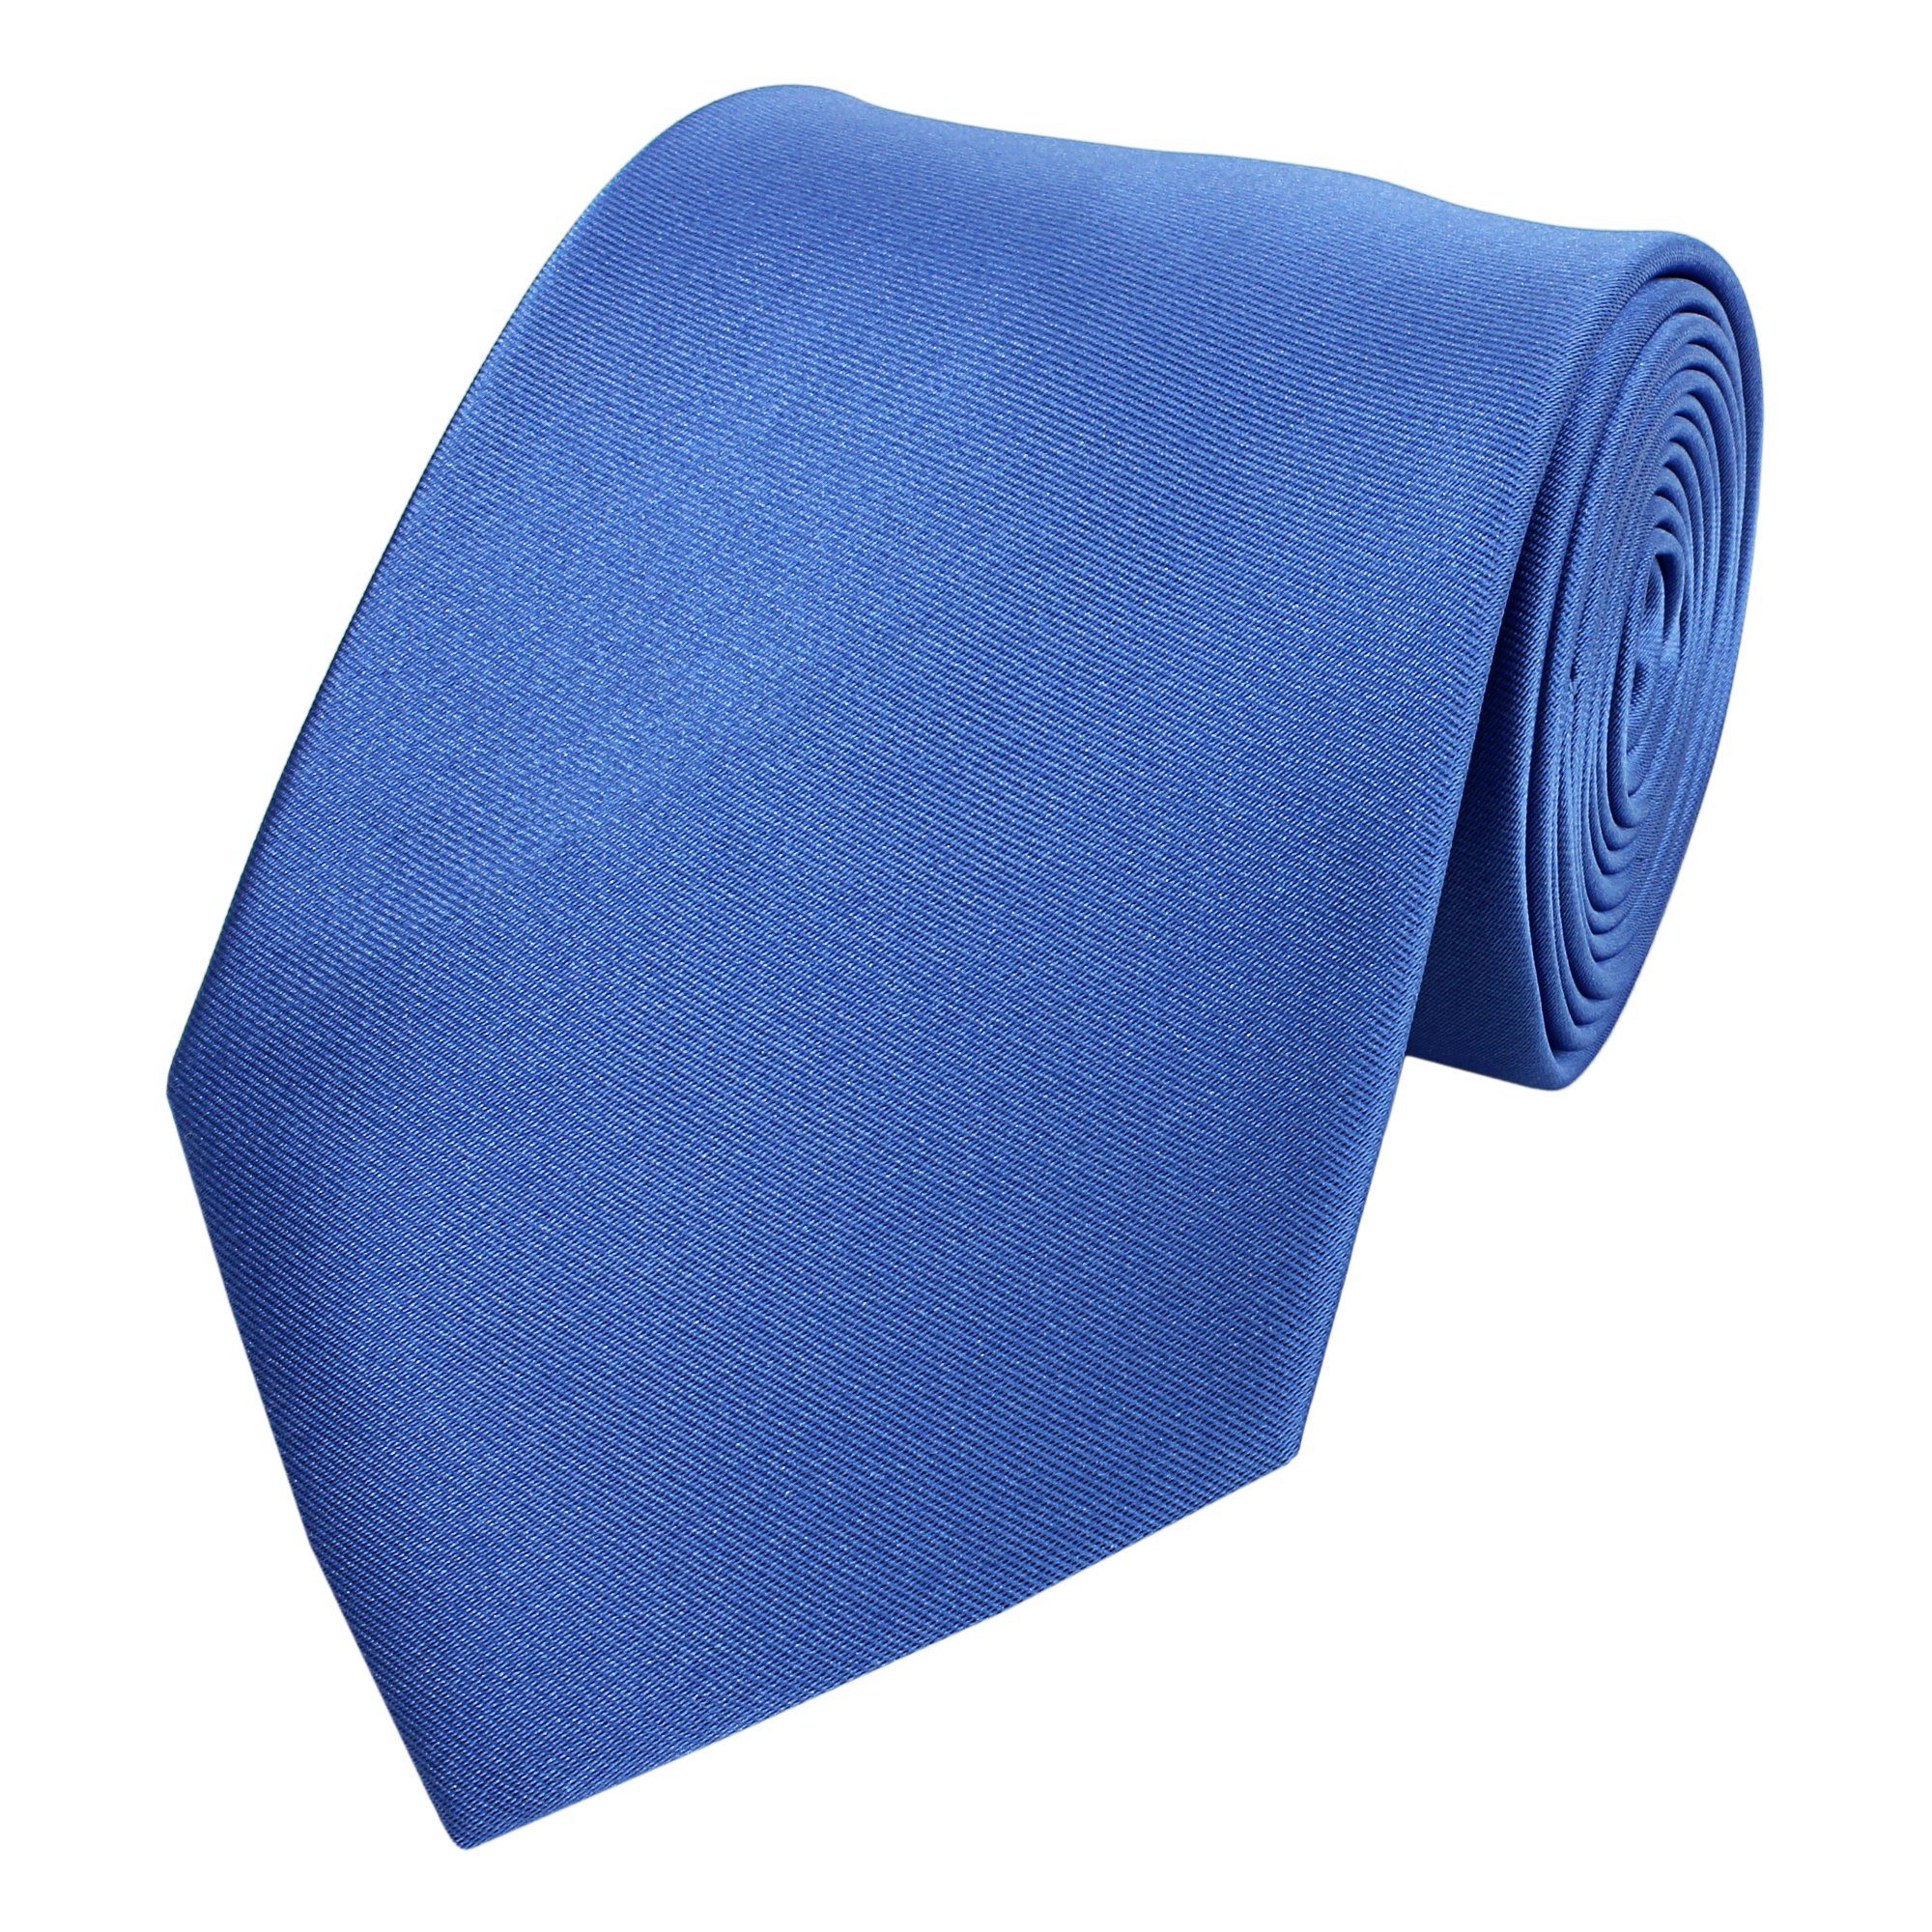 8cm Blue (ohne verschiedene Blautöne Einfarbig Fabio in - Box, Schlips Krawatte Unifarben) Männer Krawatte (8cm), Uni Herren - Blaue Blau Meridian Farini Breit